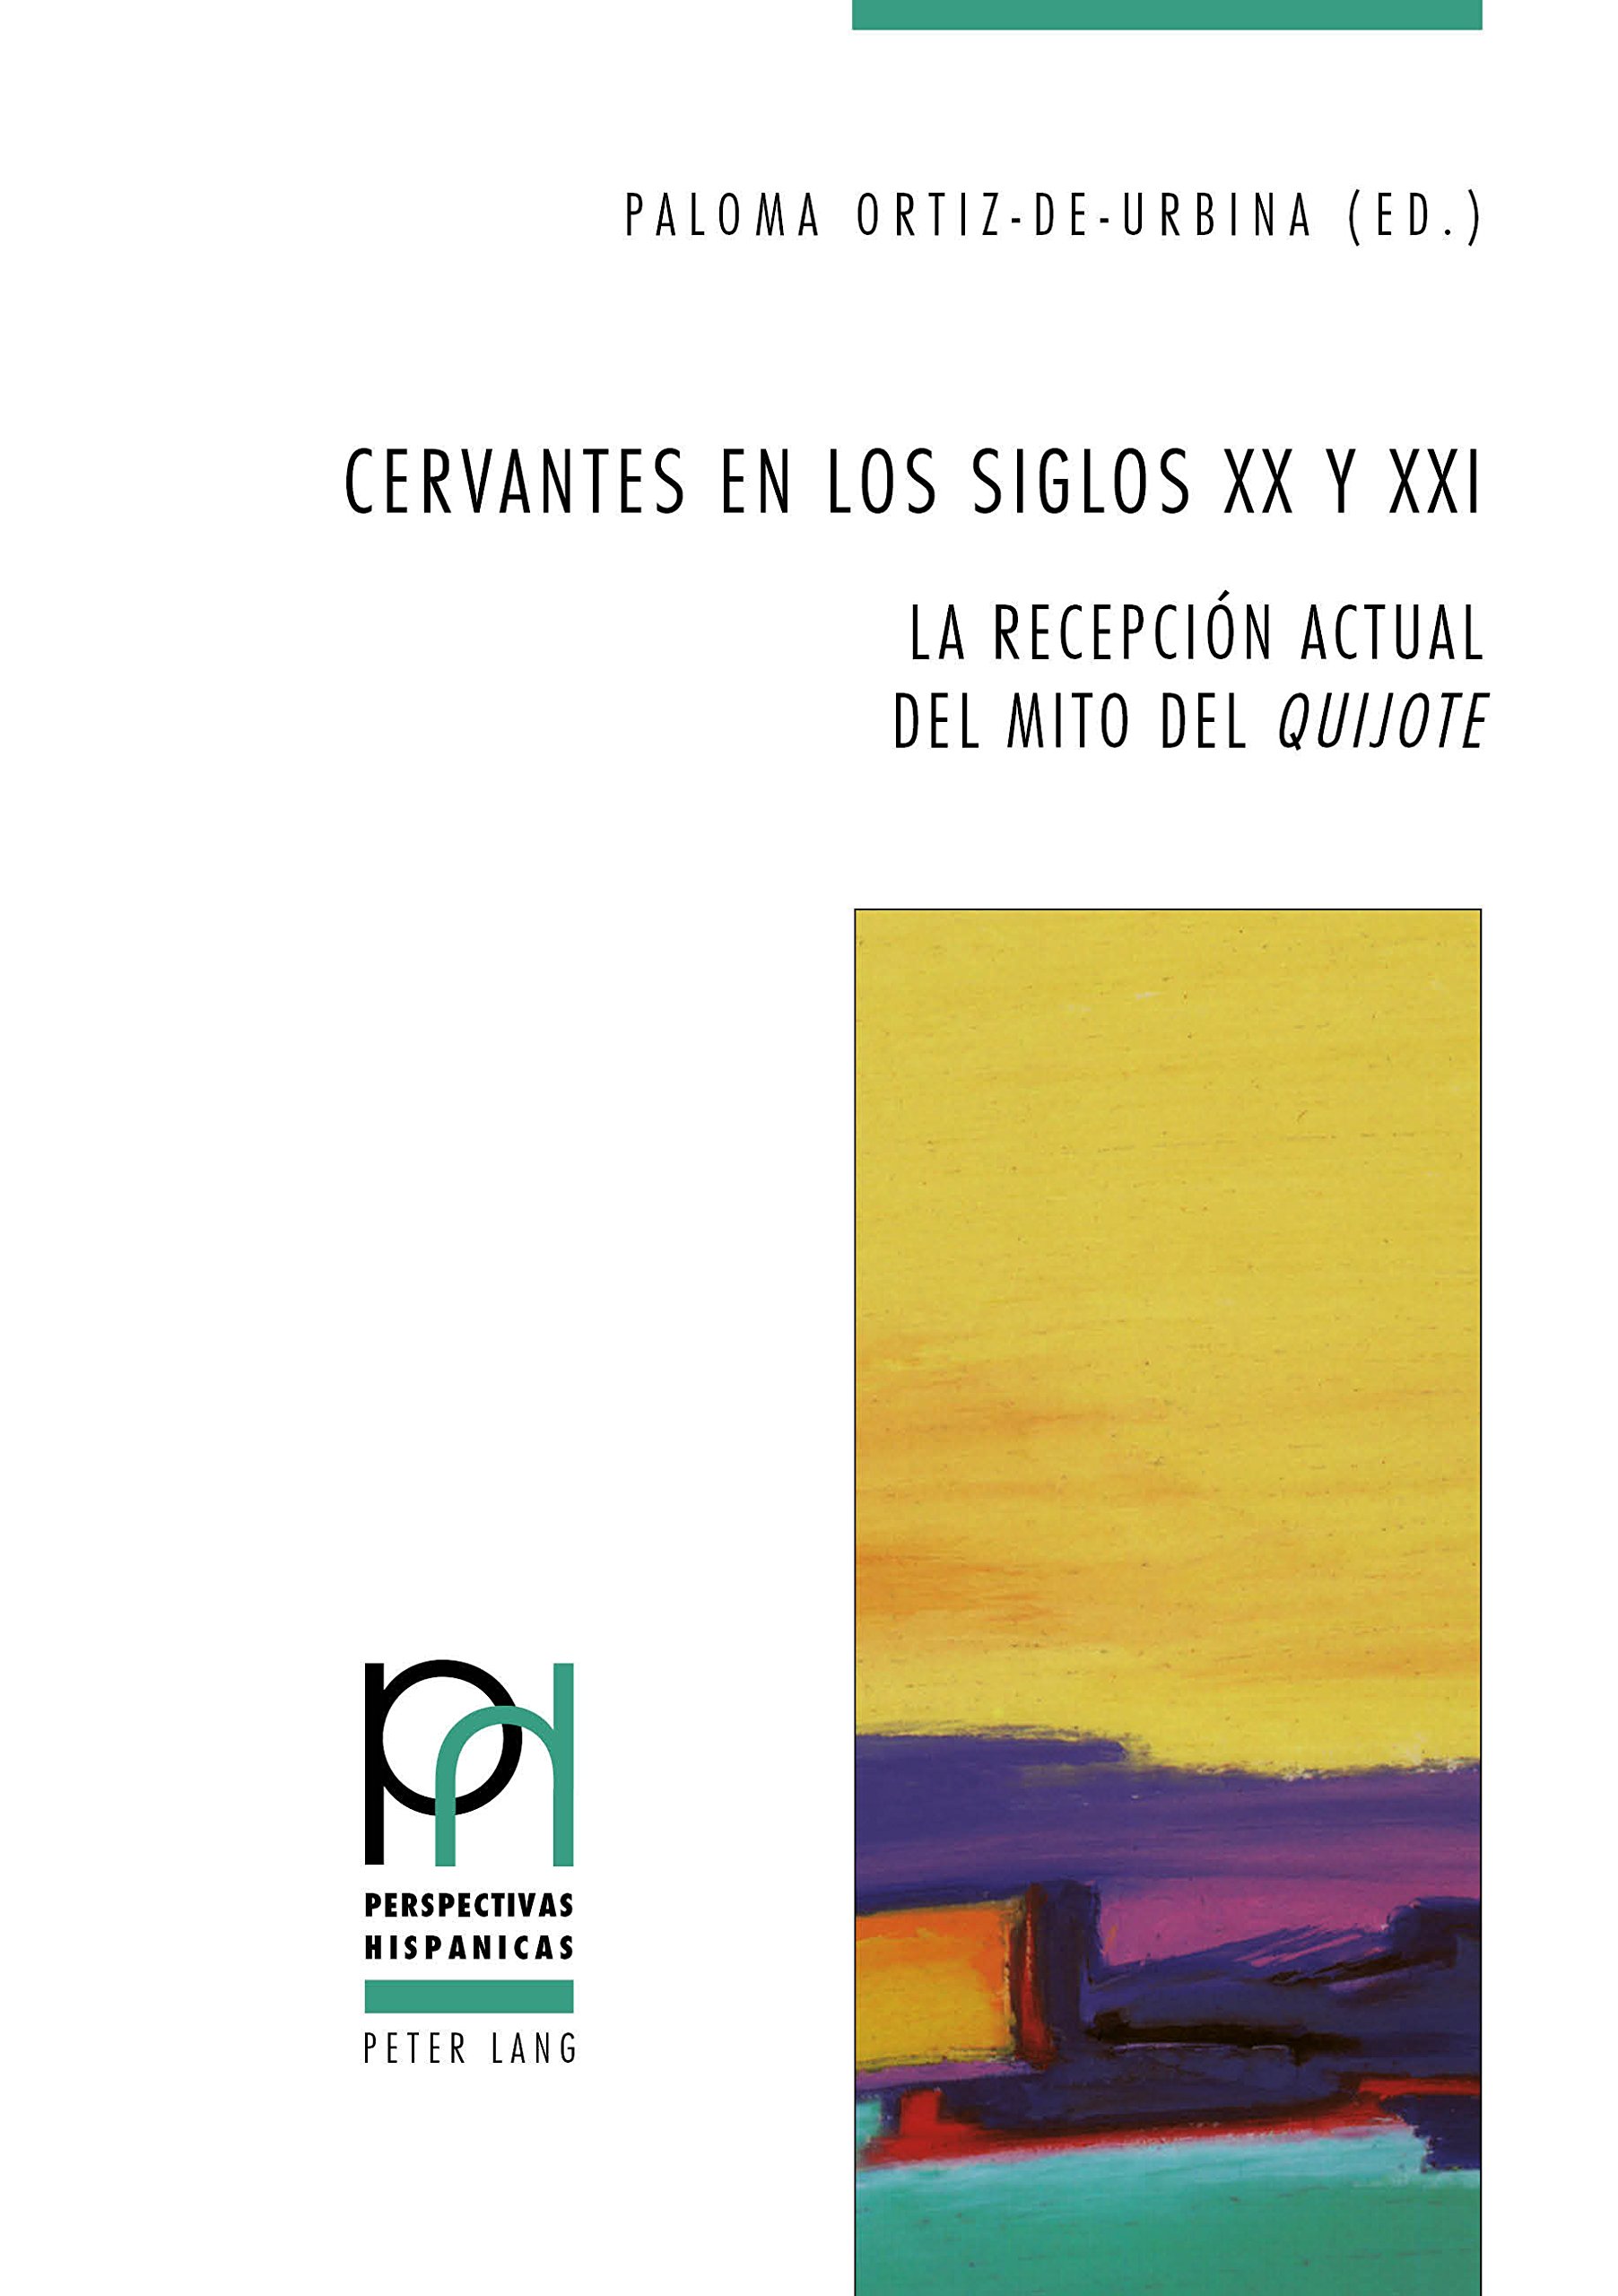 Imagen de portada del libro Cervantes en los siglos XX y XXI